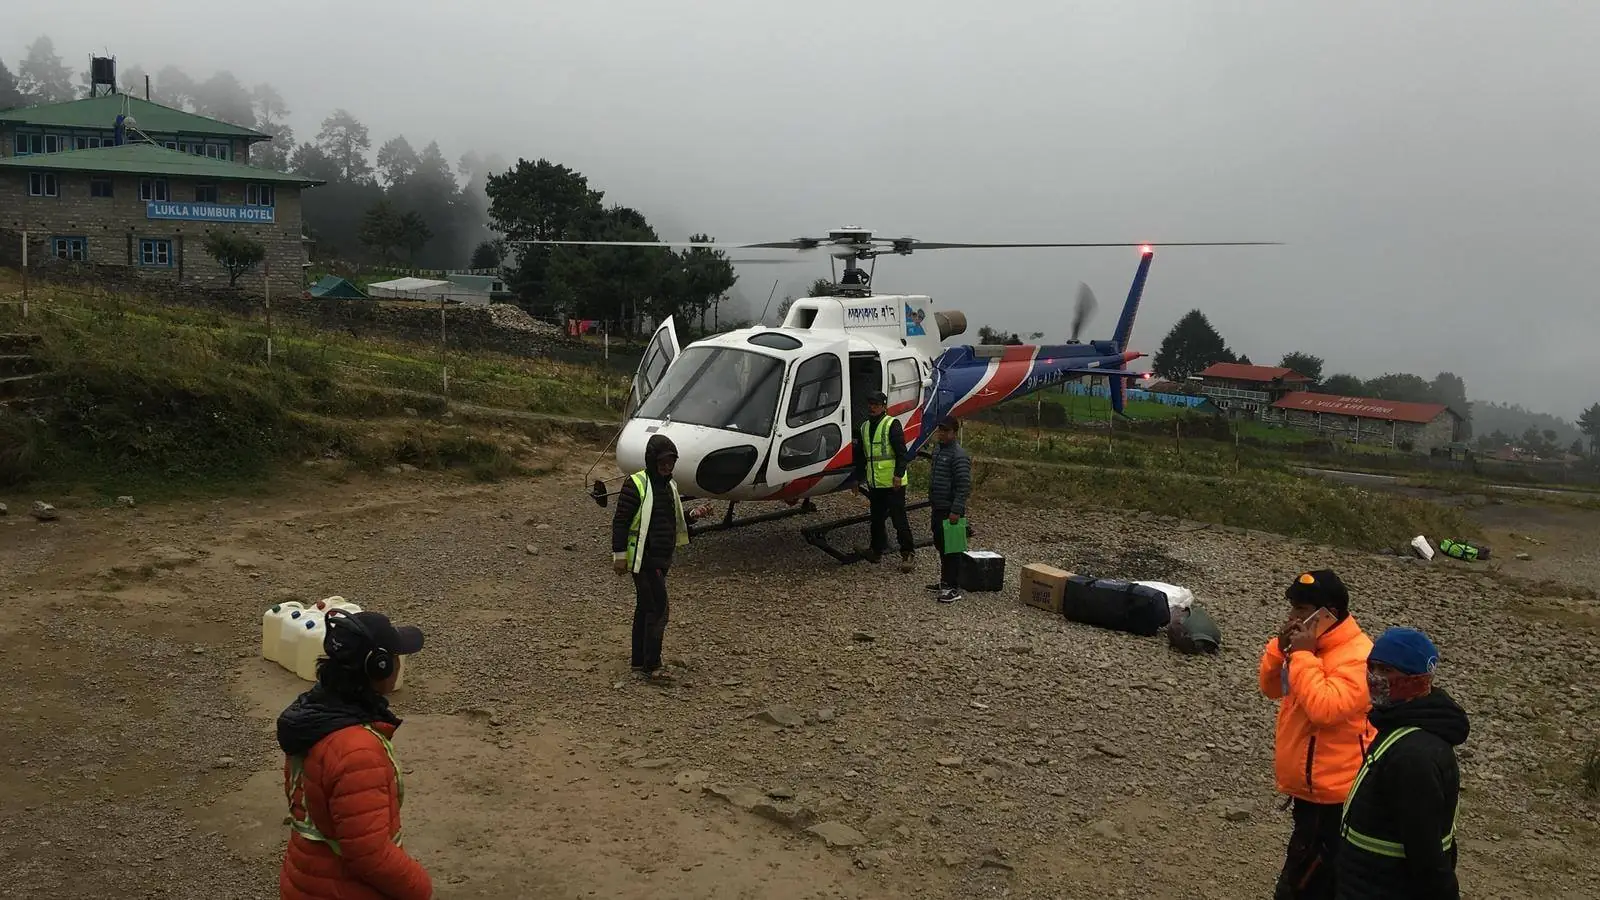 חילוץ כפול בנפאל (צילום: Magnus)